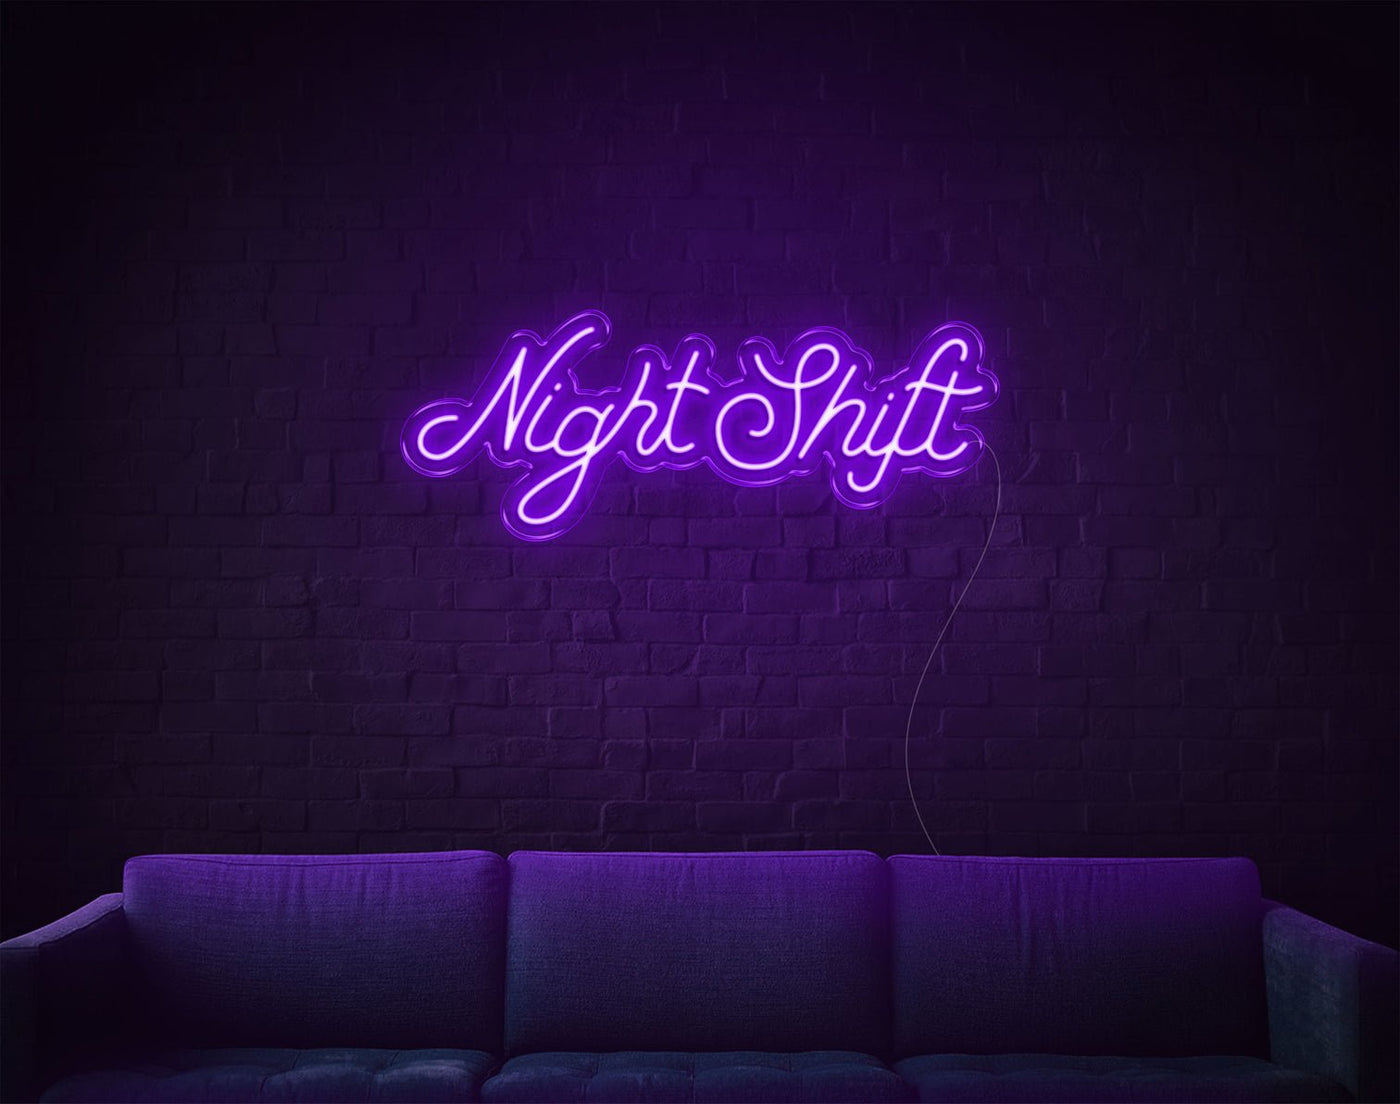 Nightshift LED Neon Sign - 11inch x 30inchPurple